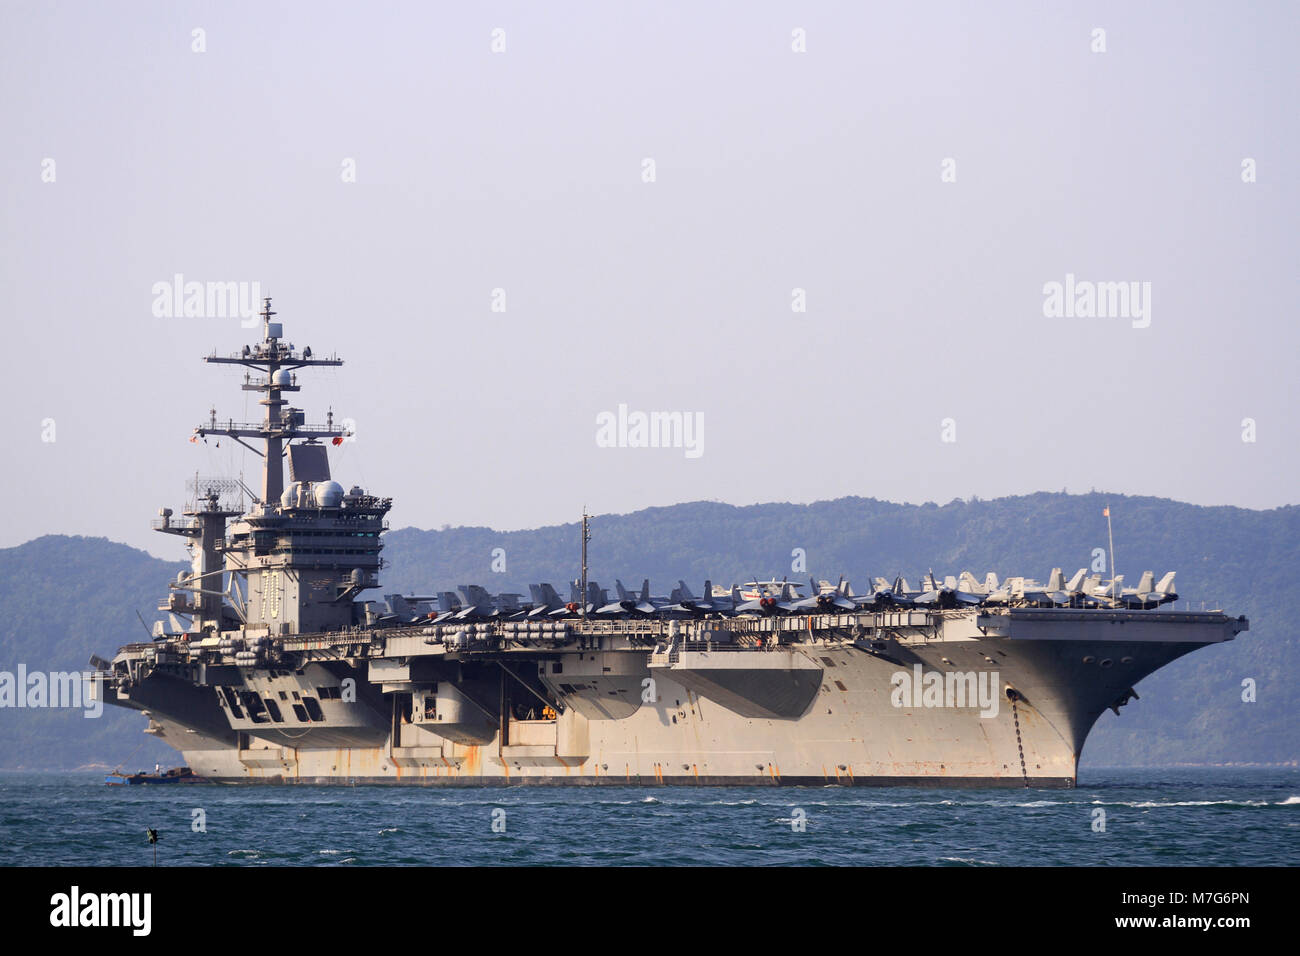 Les États-Unis, porte-avions USS Carl Vinson, ancré au large de la côte au port Sa Tien le 5 mars 2018 à Danang, Vietnam. Banque D'Images